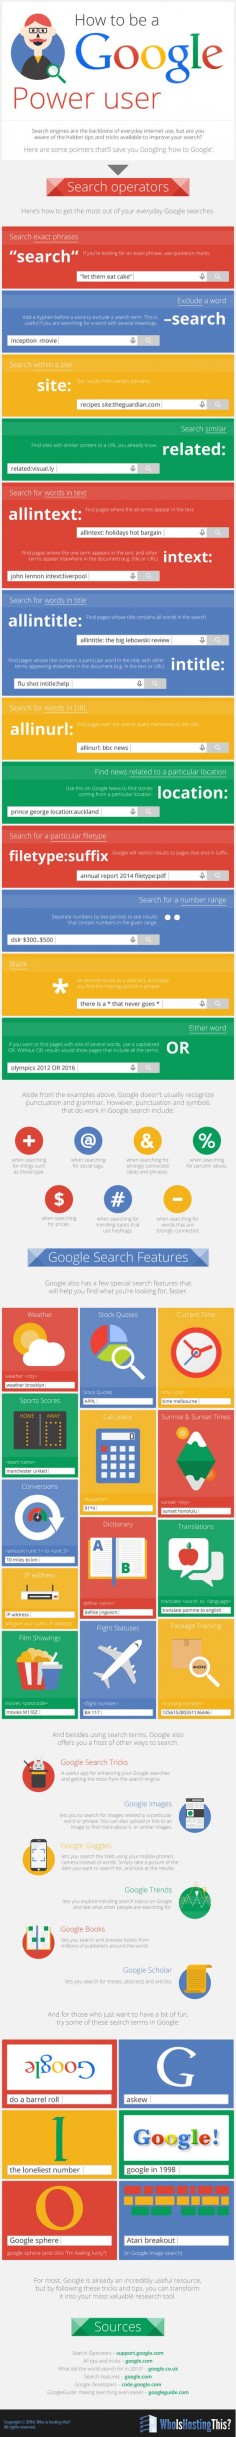 How to Be a #Google Power User - #socialmedia